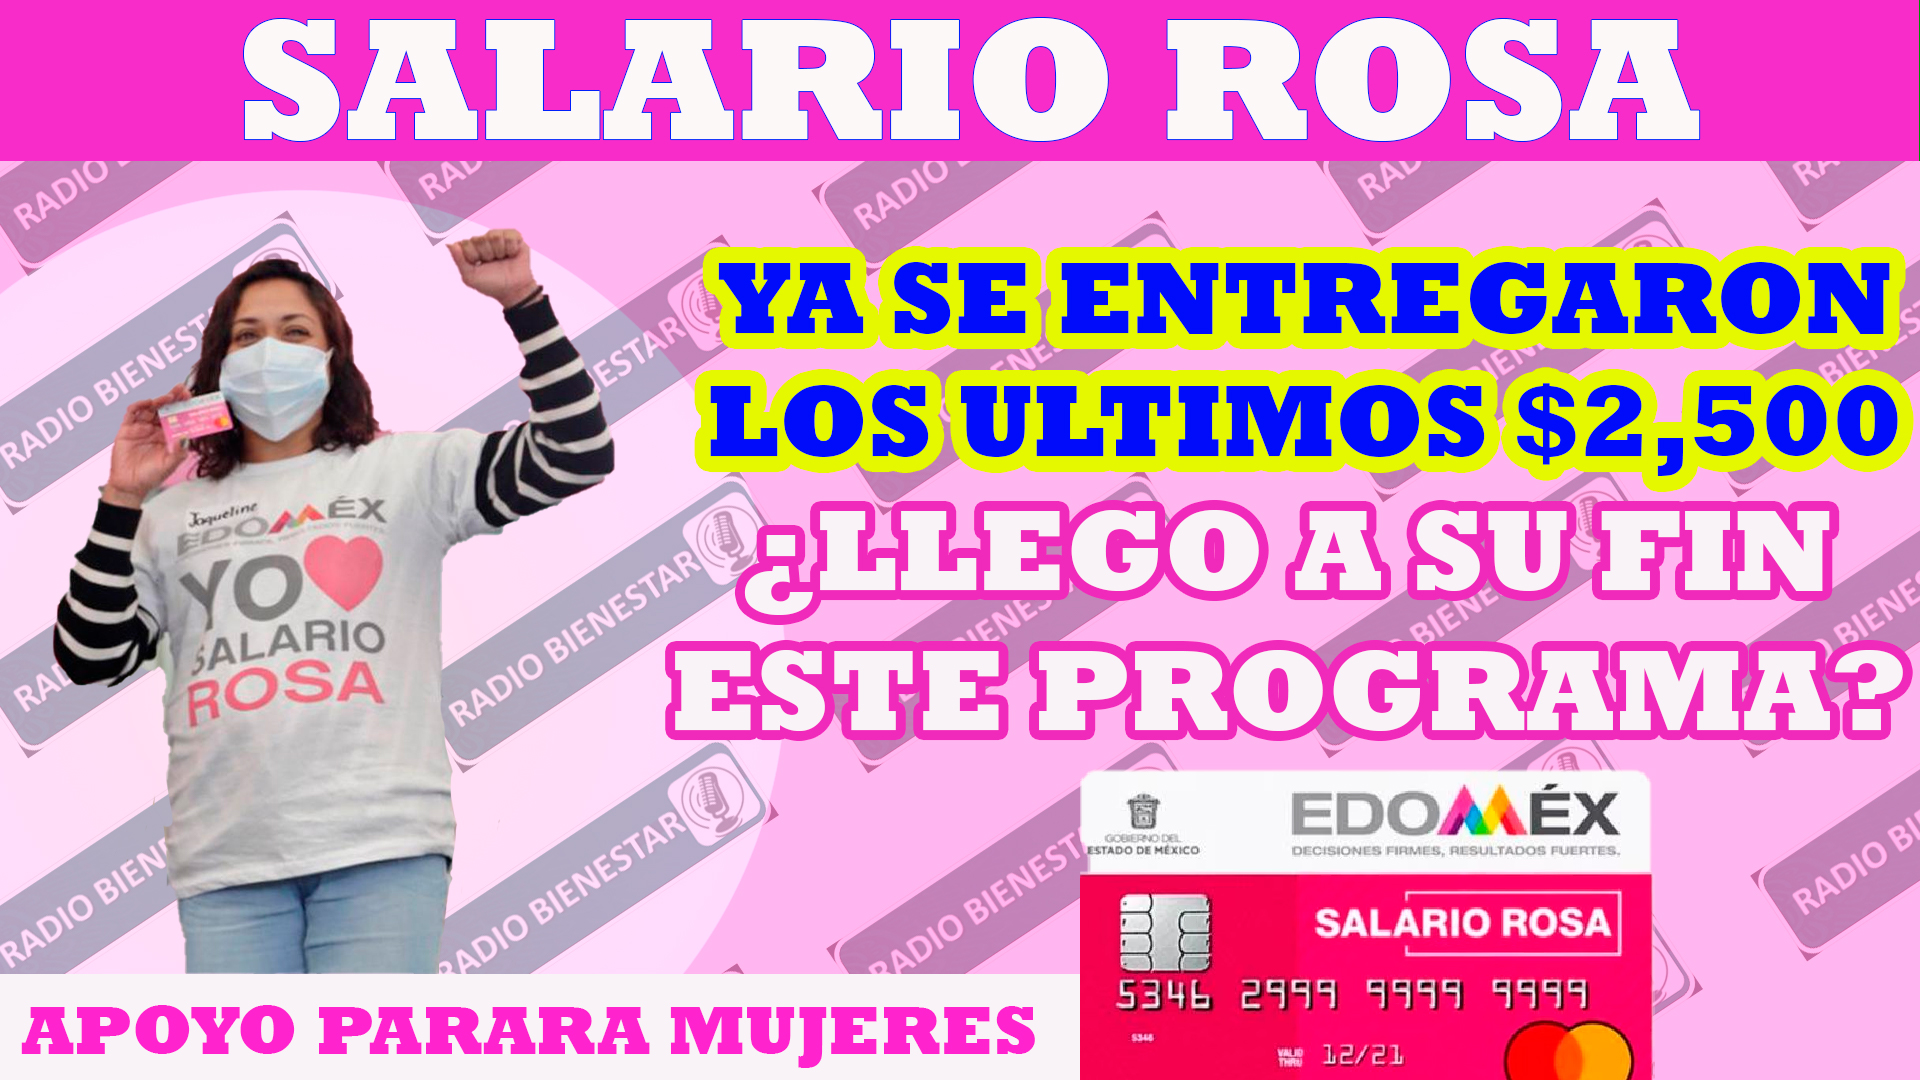 Se depositaron los 2,500 pesos del programa Salario Rosa, ¿que pasara con este programa taras el cambio de candidatura?